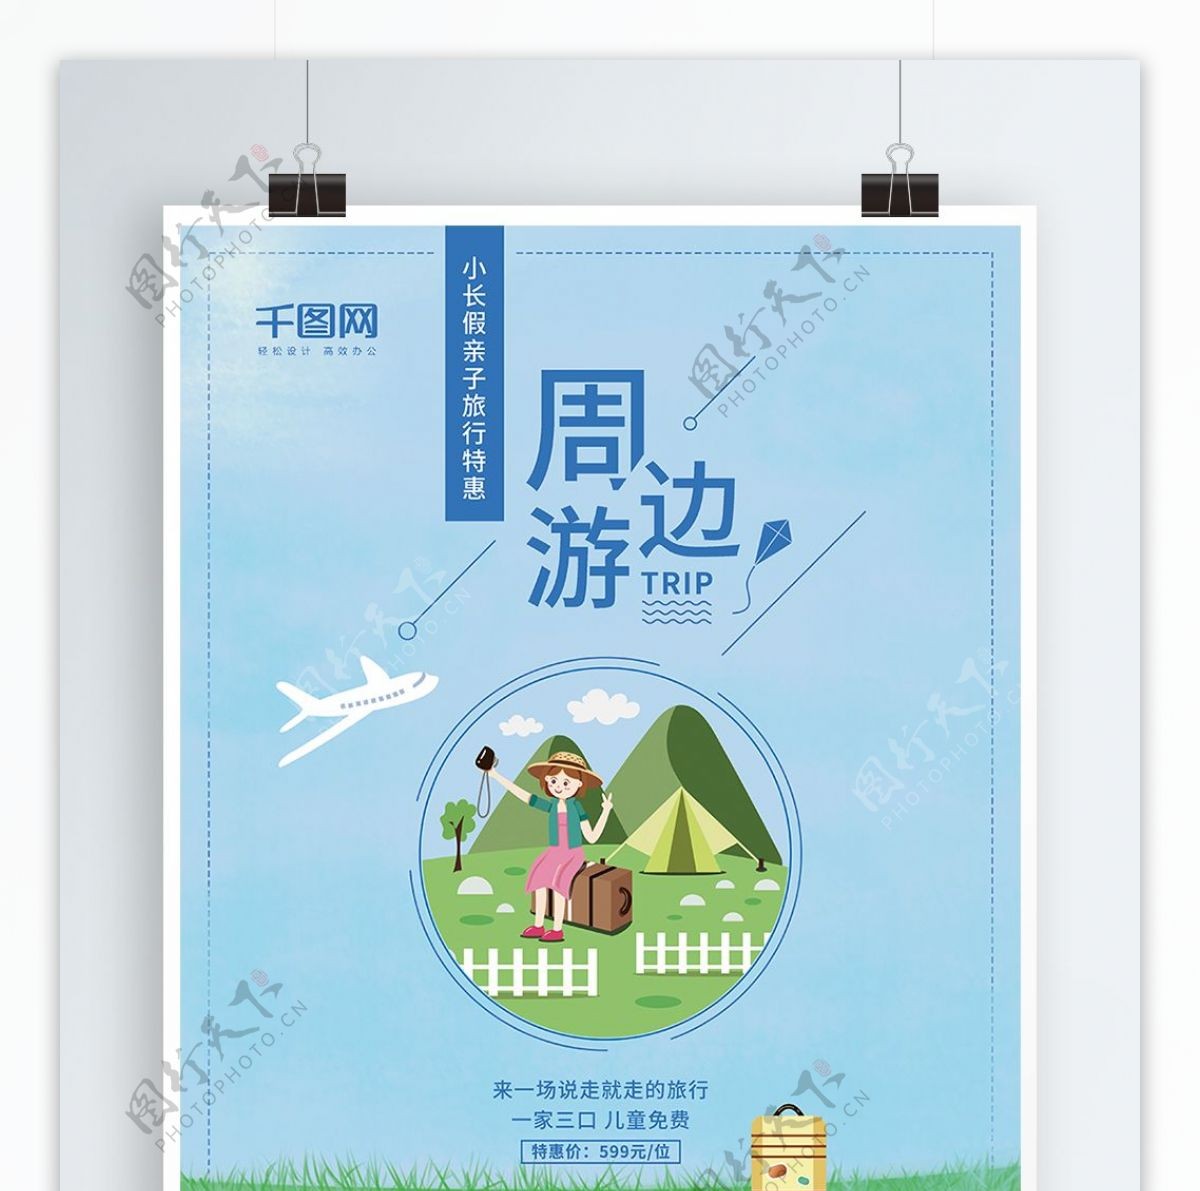 简约清新亲子春游周边游旅行社促销旅游海报